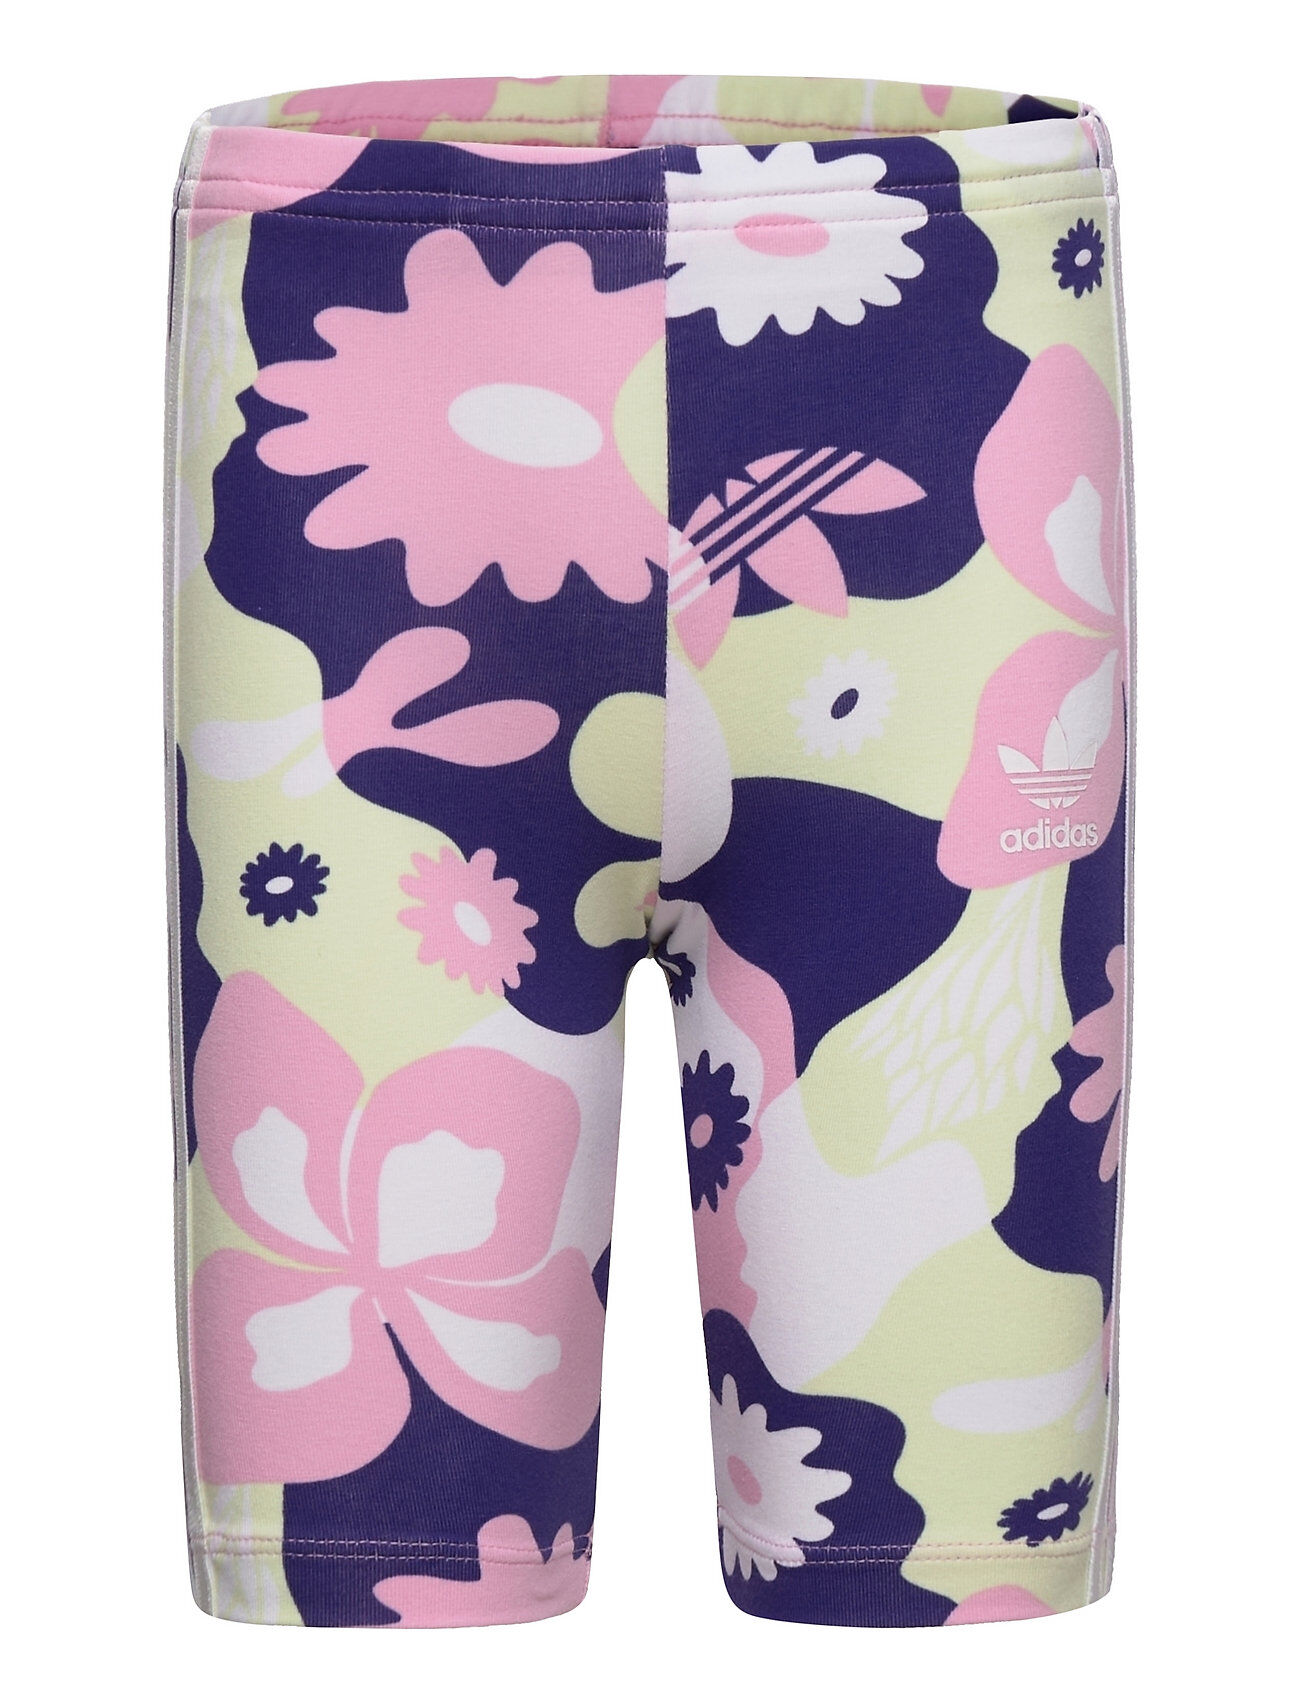 adidas Originals Allover Flower Print Cycling Shorts Shorts Cycling Shorts Multi/mønstret Adidas Originals